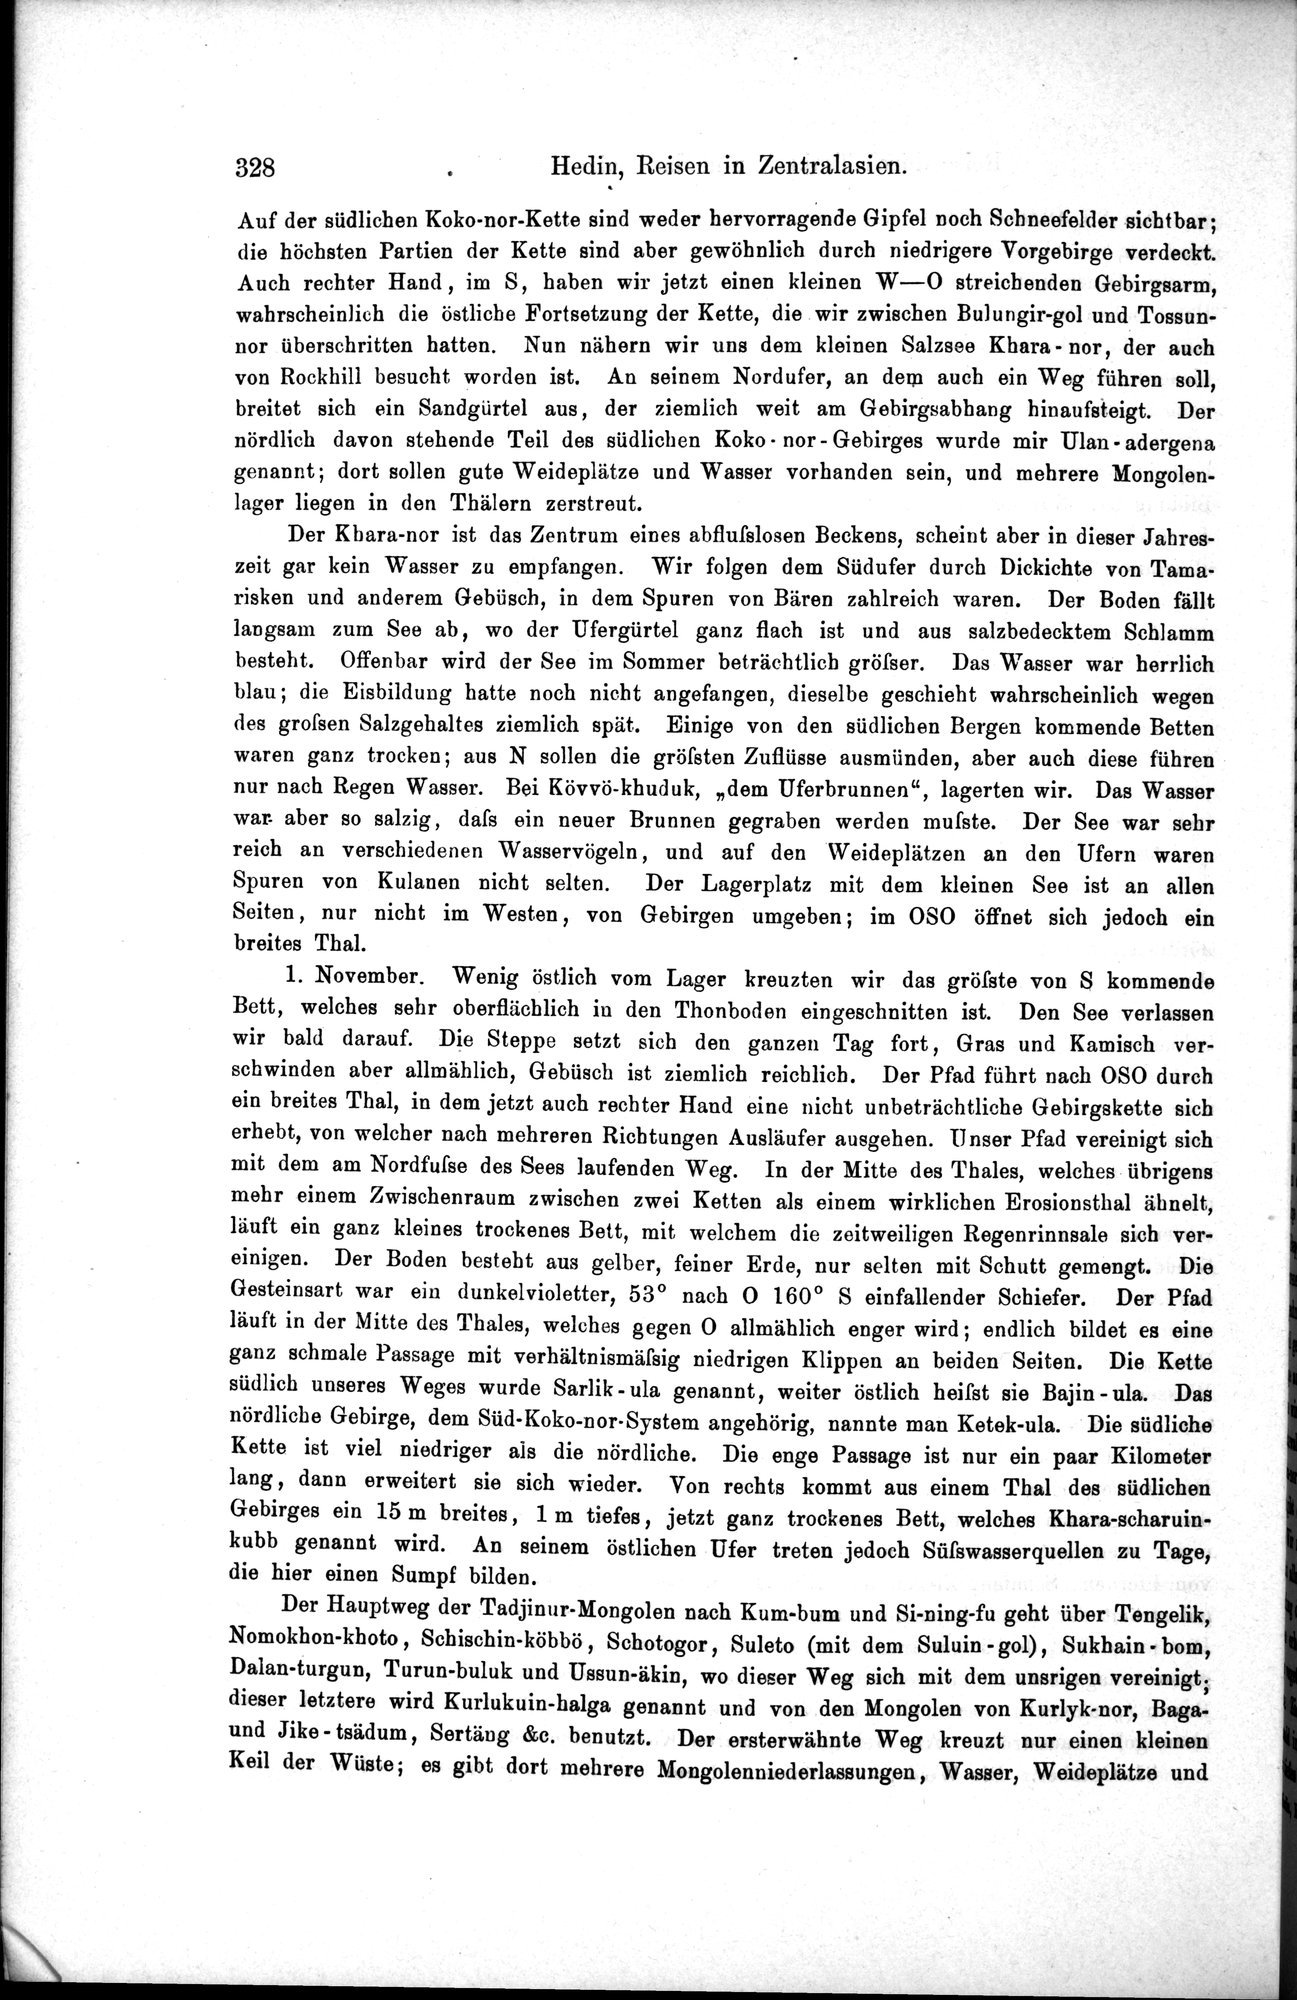 Die Geographische-Wissenschaftlichen Ergebnisse meiner Reisen in Zentralasien, 1894-1897 : vol.1 / Page 340 (Grayscale High Resolution Image)